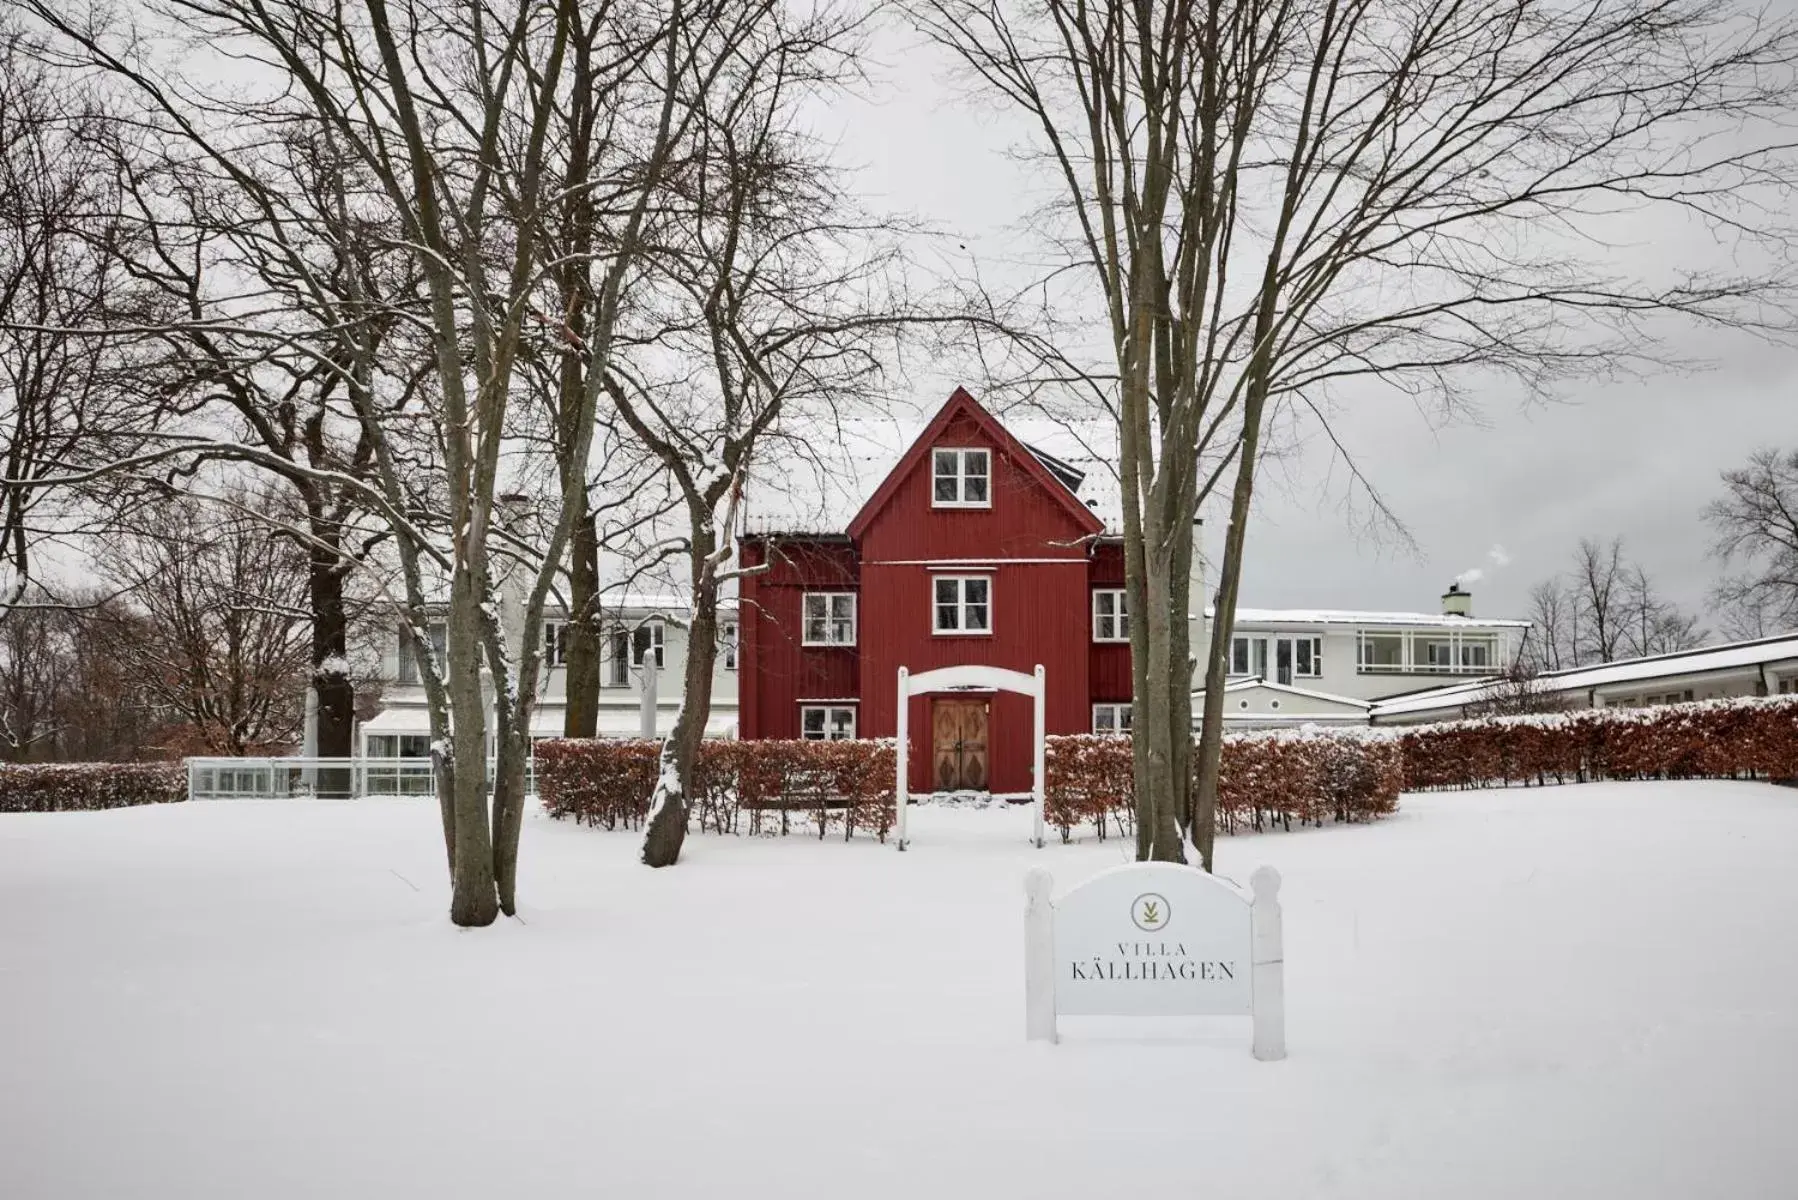 Property building, Winter in Villa Källhagen